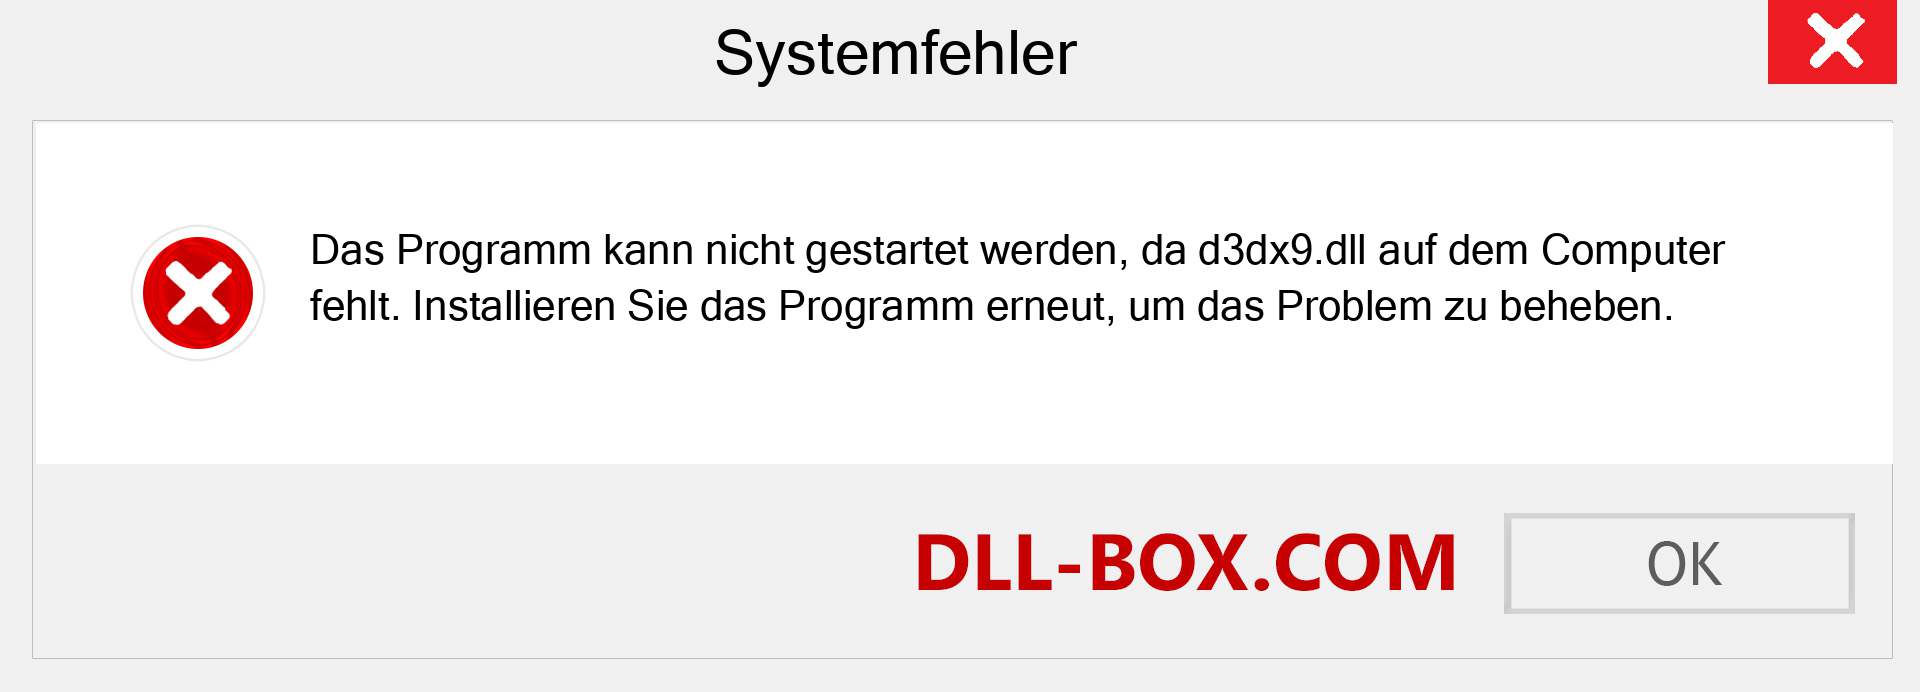 d3dx9.dll-Datei fehlt?. Download für Windows 7, 8, 10 - Fix d3dx9 dll Missing Error unter Windows, Fotos, Bildern